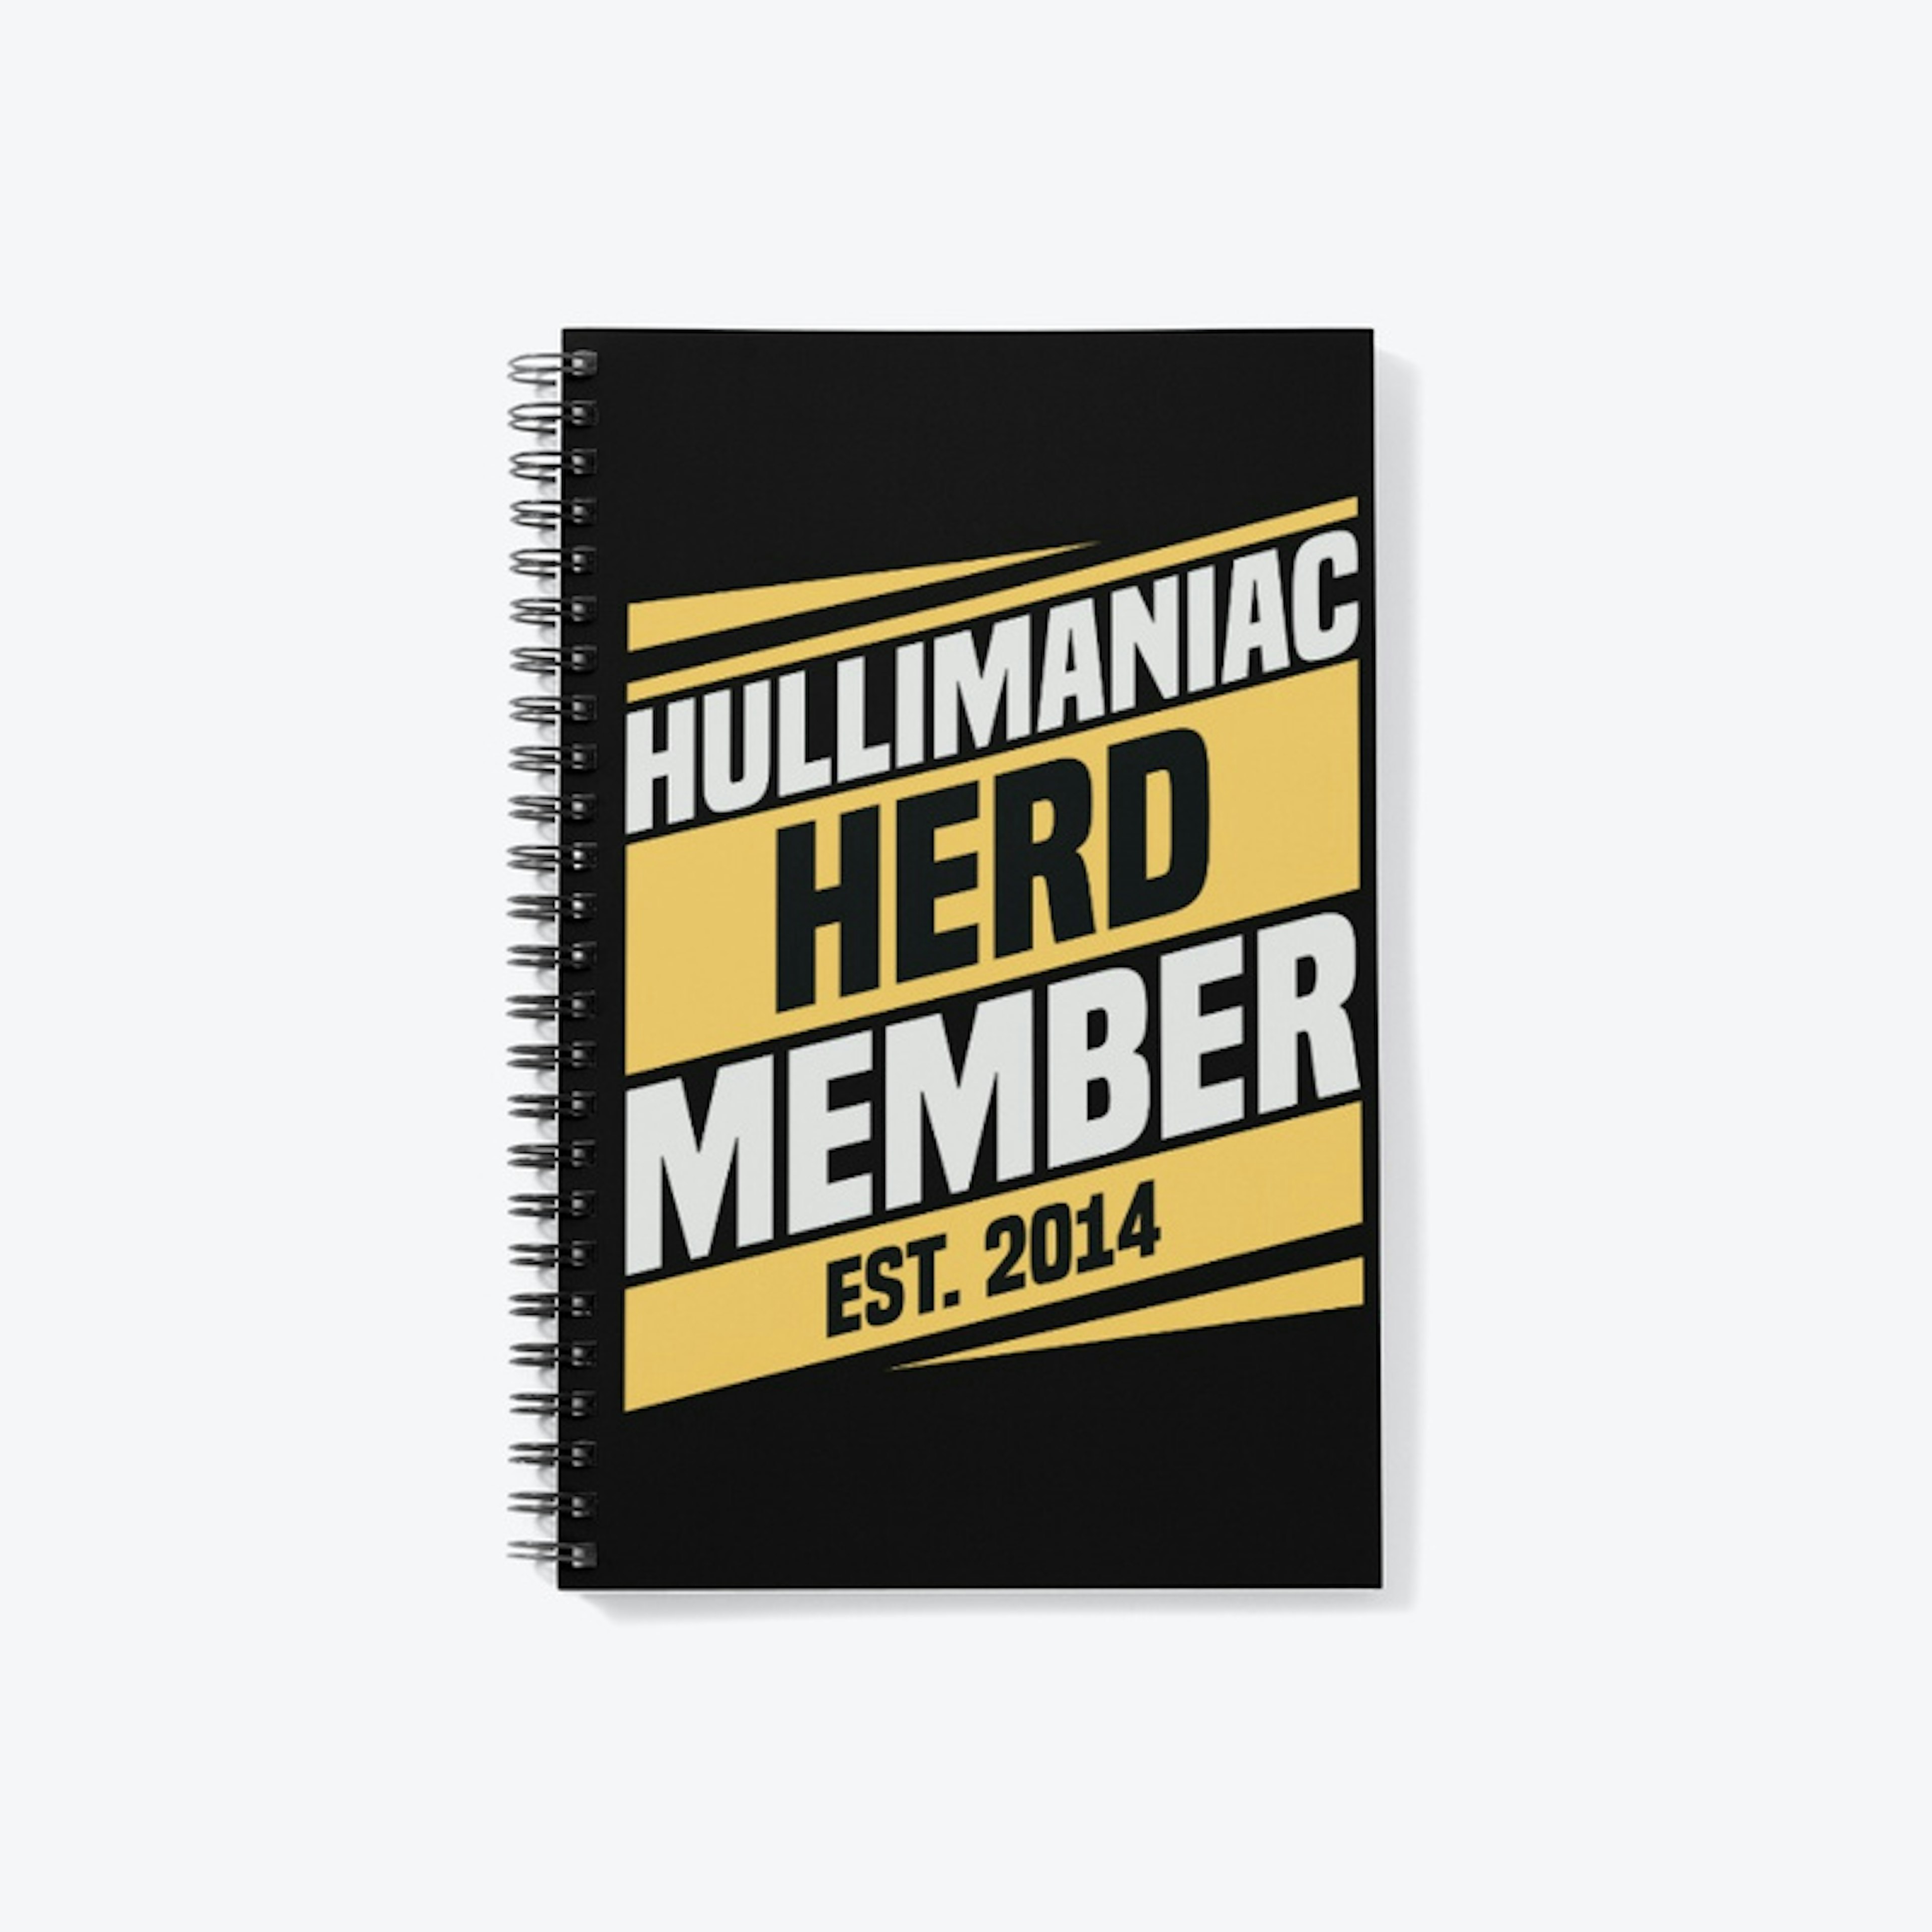 Hullimaniac Herd Member Notebook